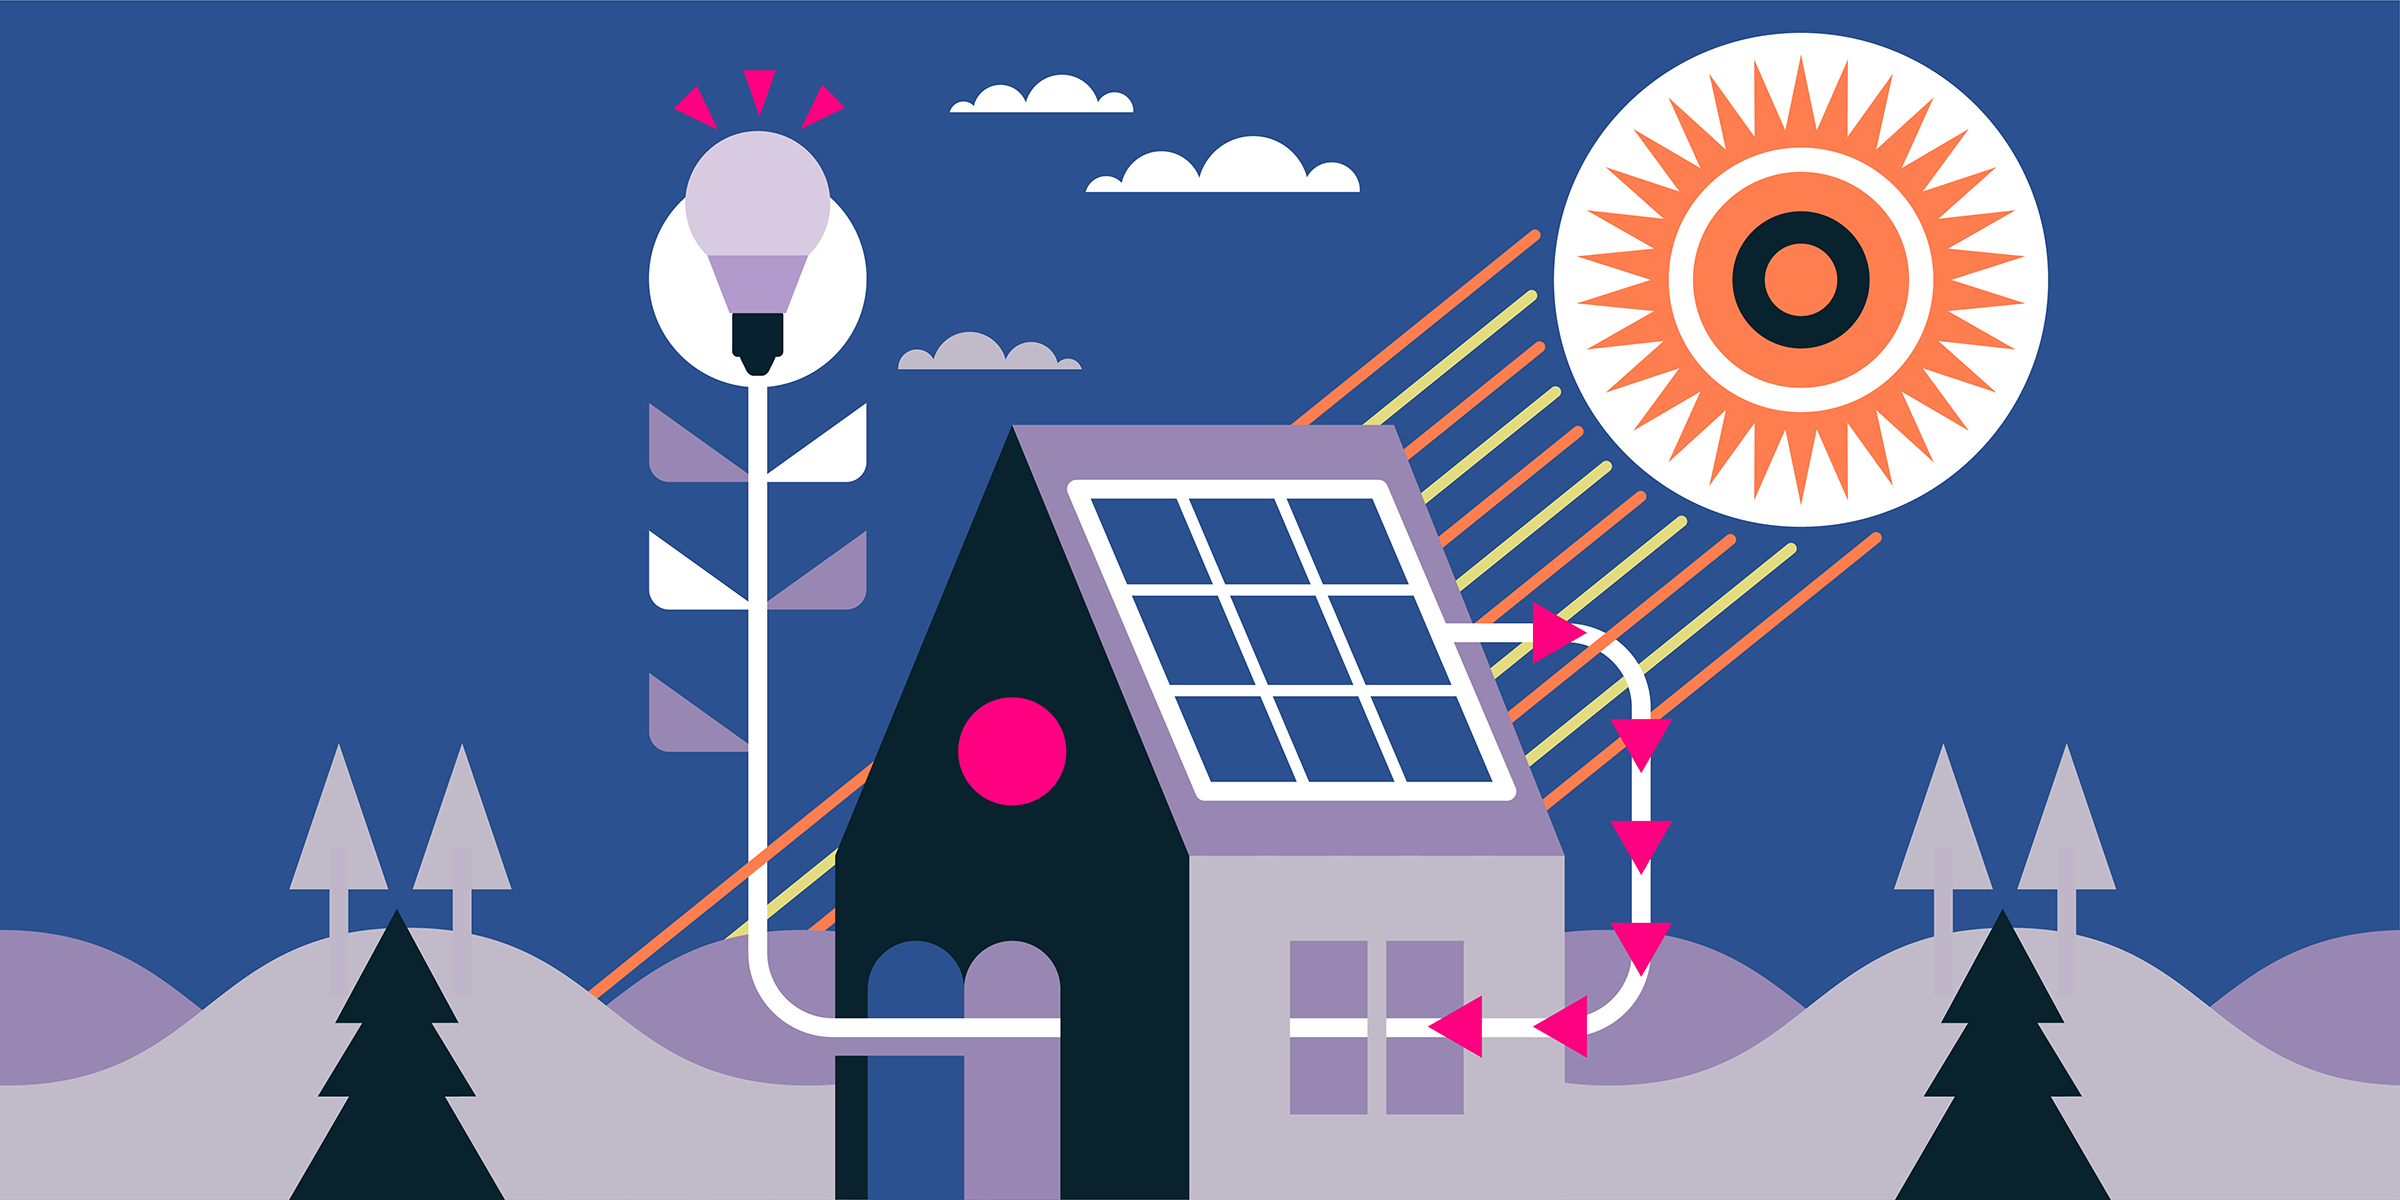 How do solar panels work?